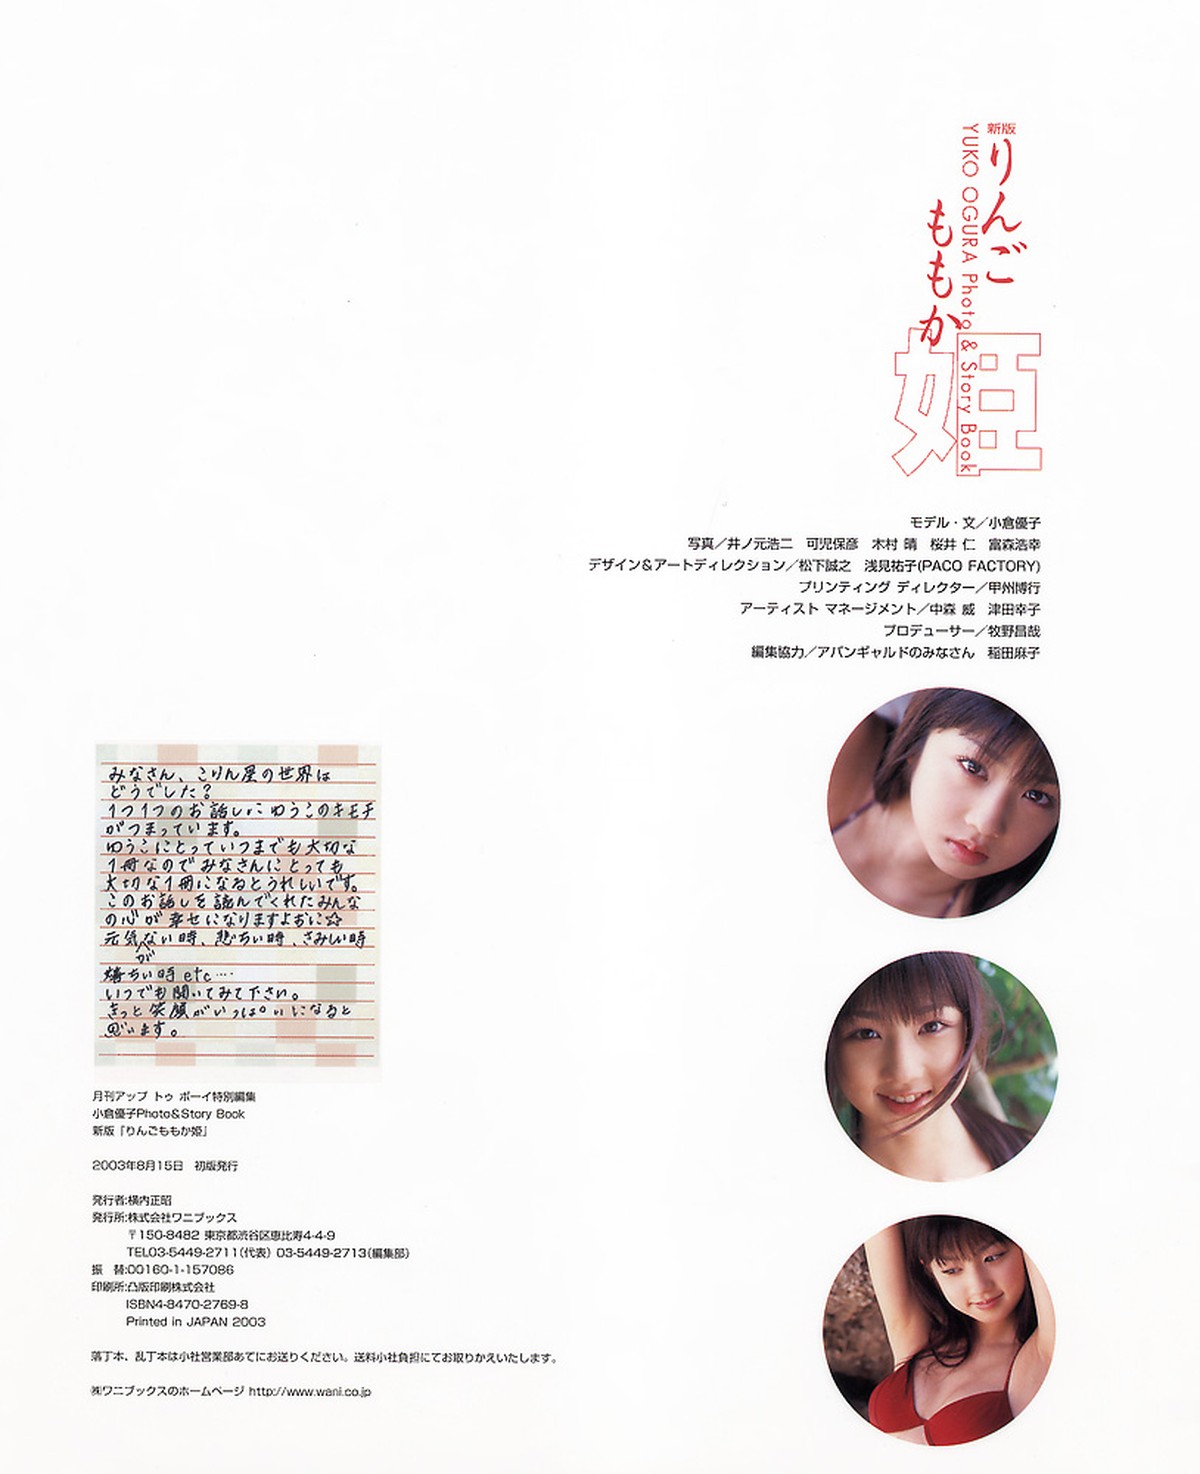 Photobook Yuko Ogura 小倉優子 Photo And Story Book Ringo Momoka Hime 0084 4170745475.jpg